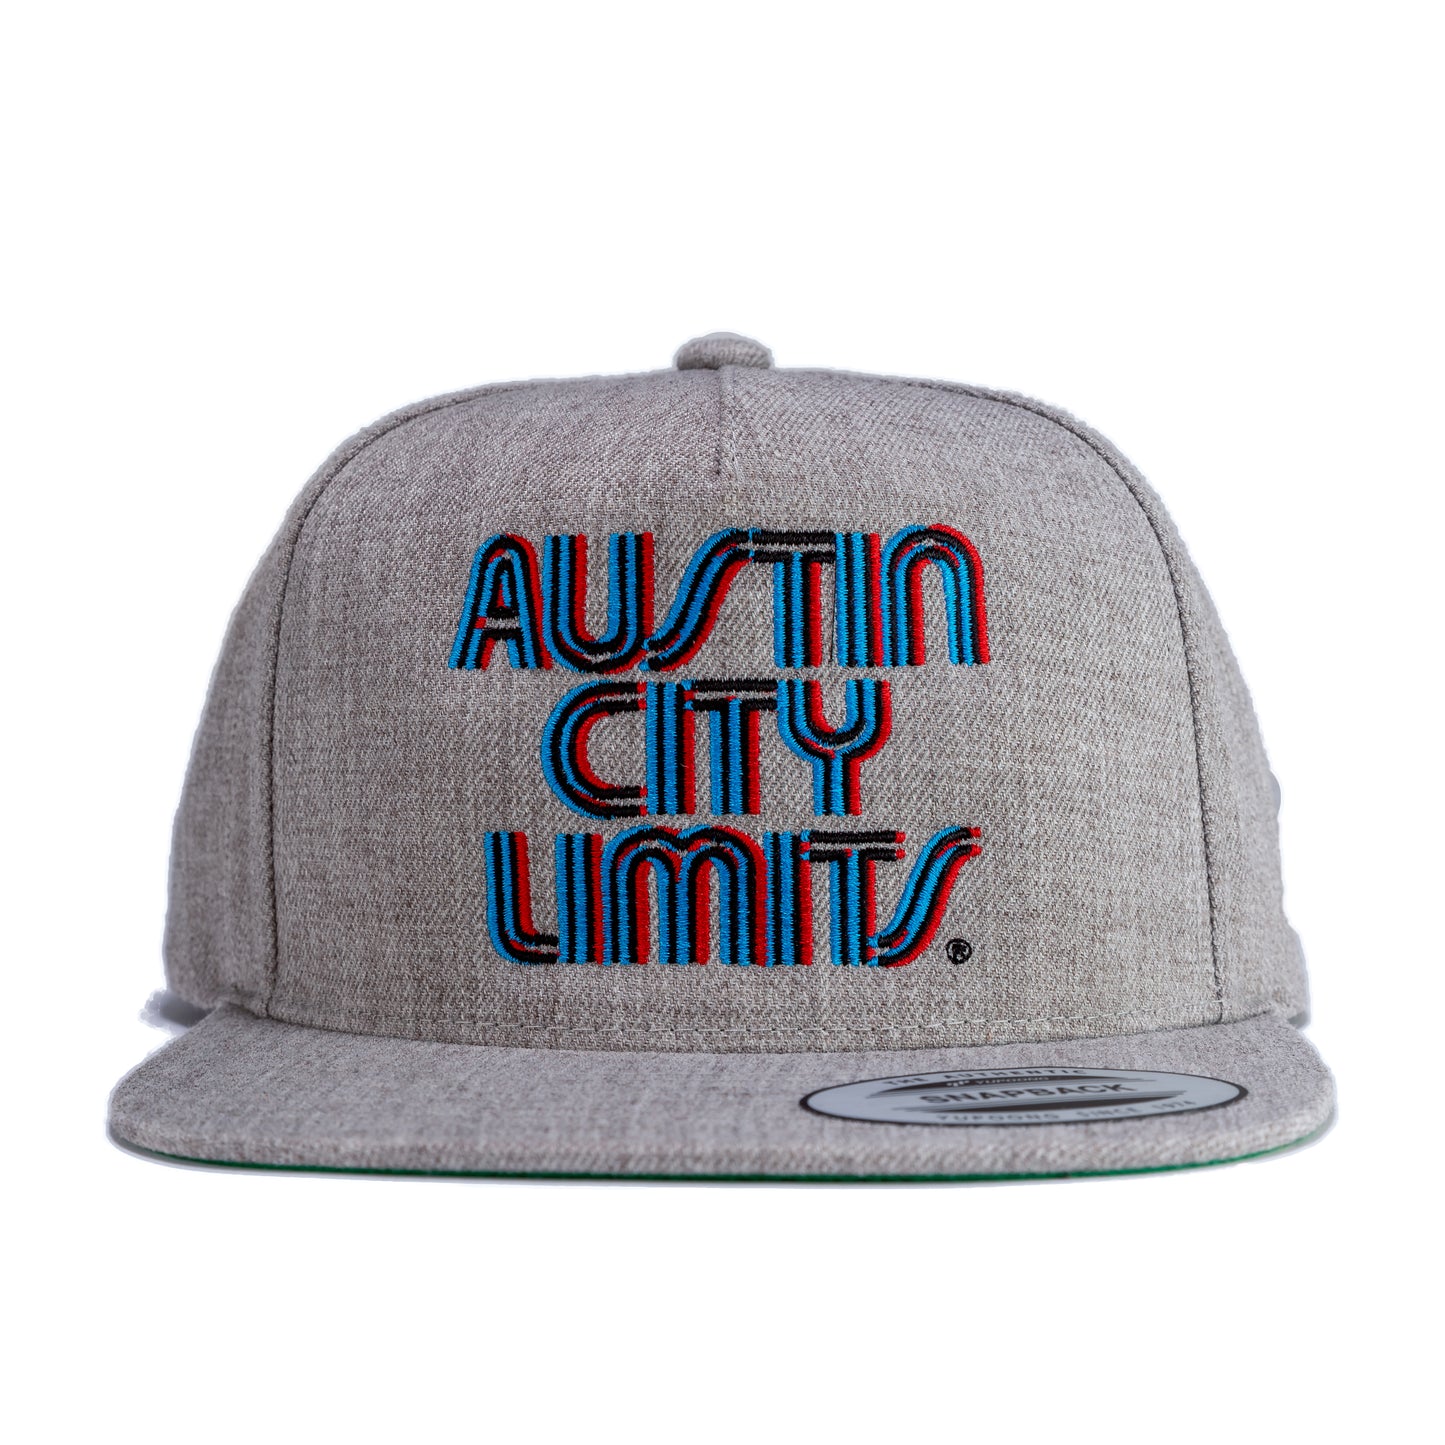 Austin City Limits Offset Triple Stitch Premium Flat Bill Snapback